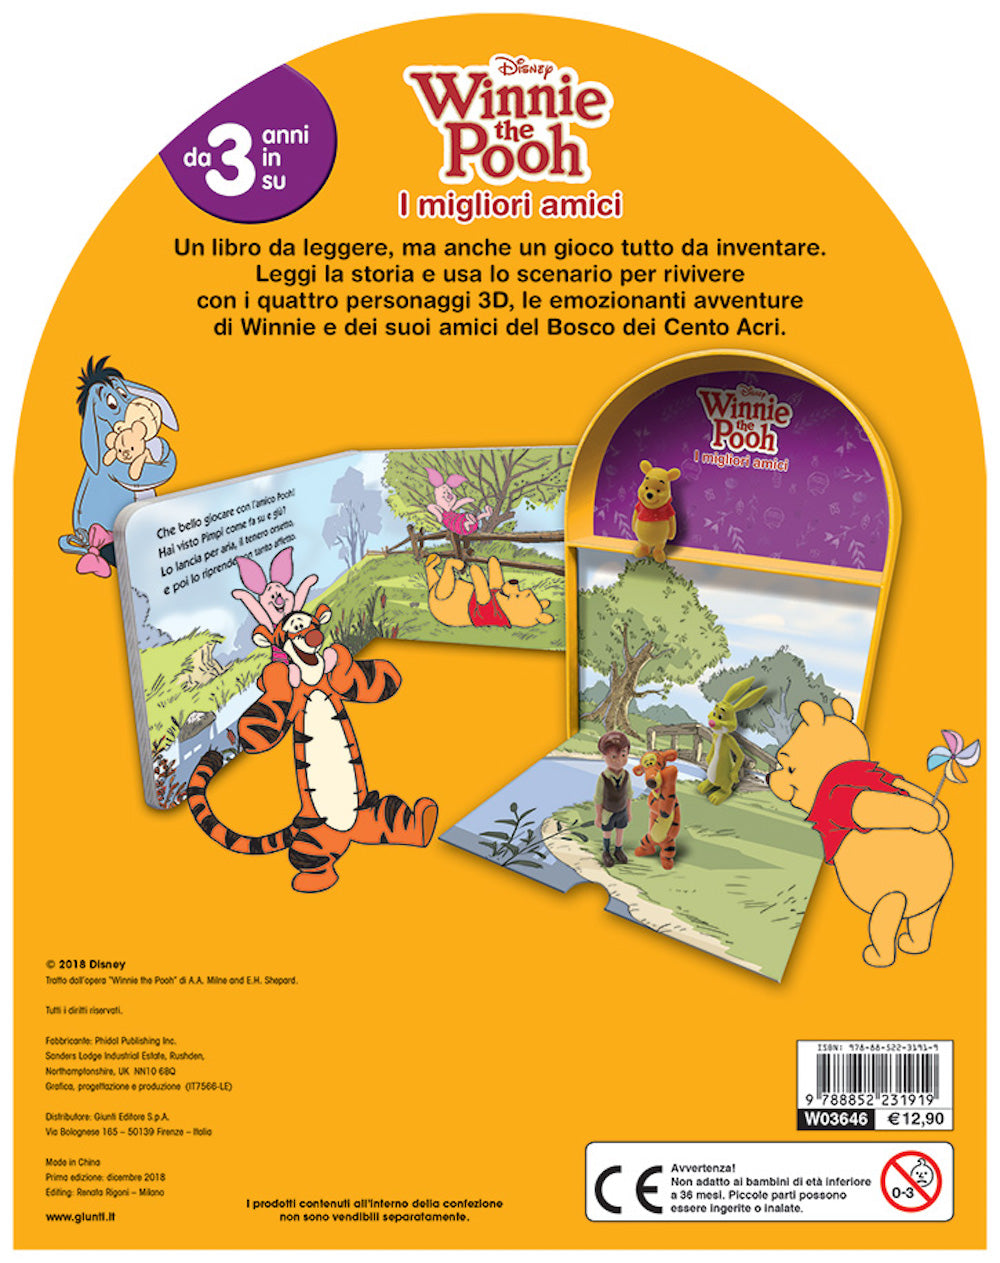 Winnie the Pooh - LibroGiocaKit - I migliori amici. Con 4 personaggi 3D e 1 scenario per giocare!